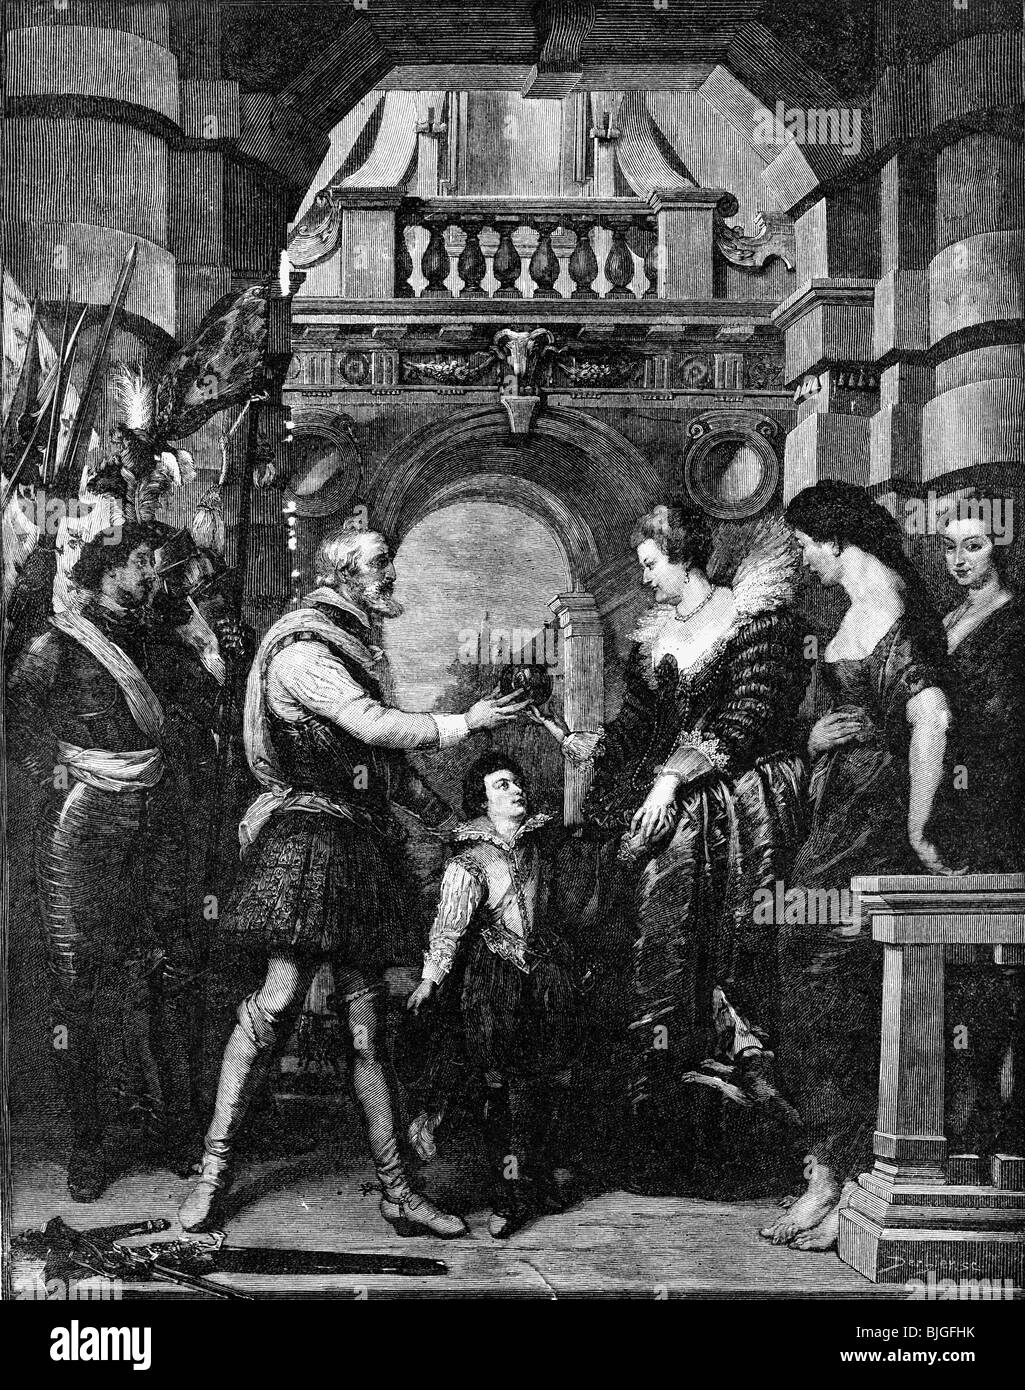 Maria dei Medici, 26.4.1573 - 3.7.1642, Reine Consort de France 17.12.1600 - 14.5.1610, est investi en tant que régent, Paris, 14.5.1610, gravure sur bois après peinture de Peter Paul Rubens, 1620/1625, l'artiste a le droit d'auteur , de ne pas être effacé Banque D'Images